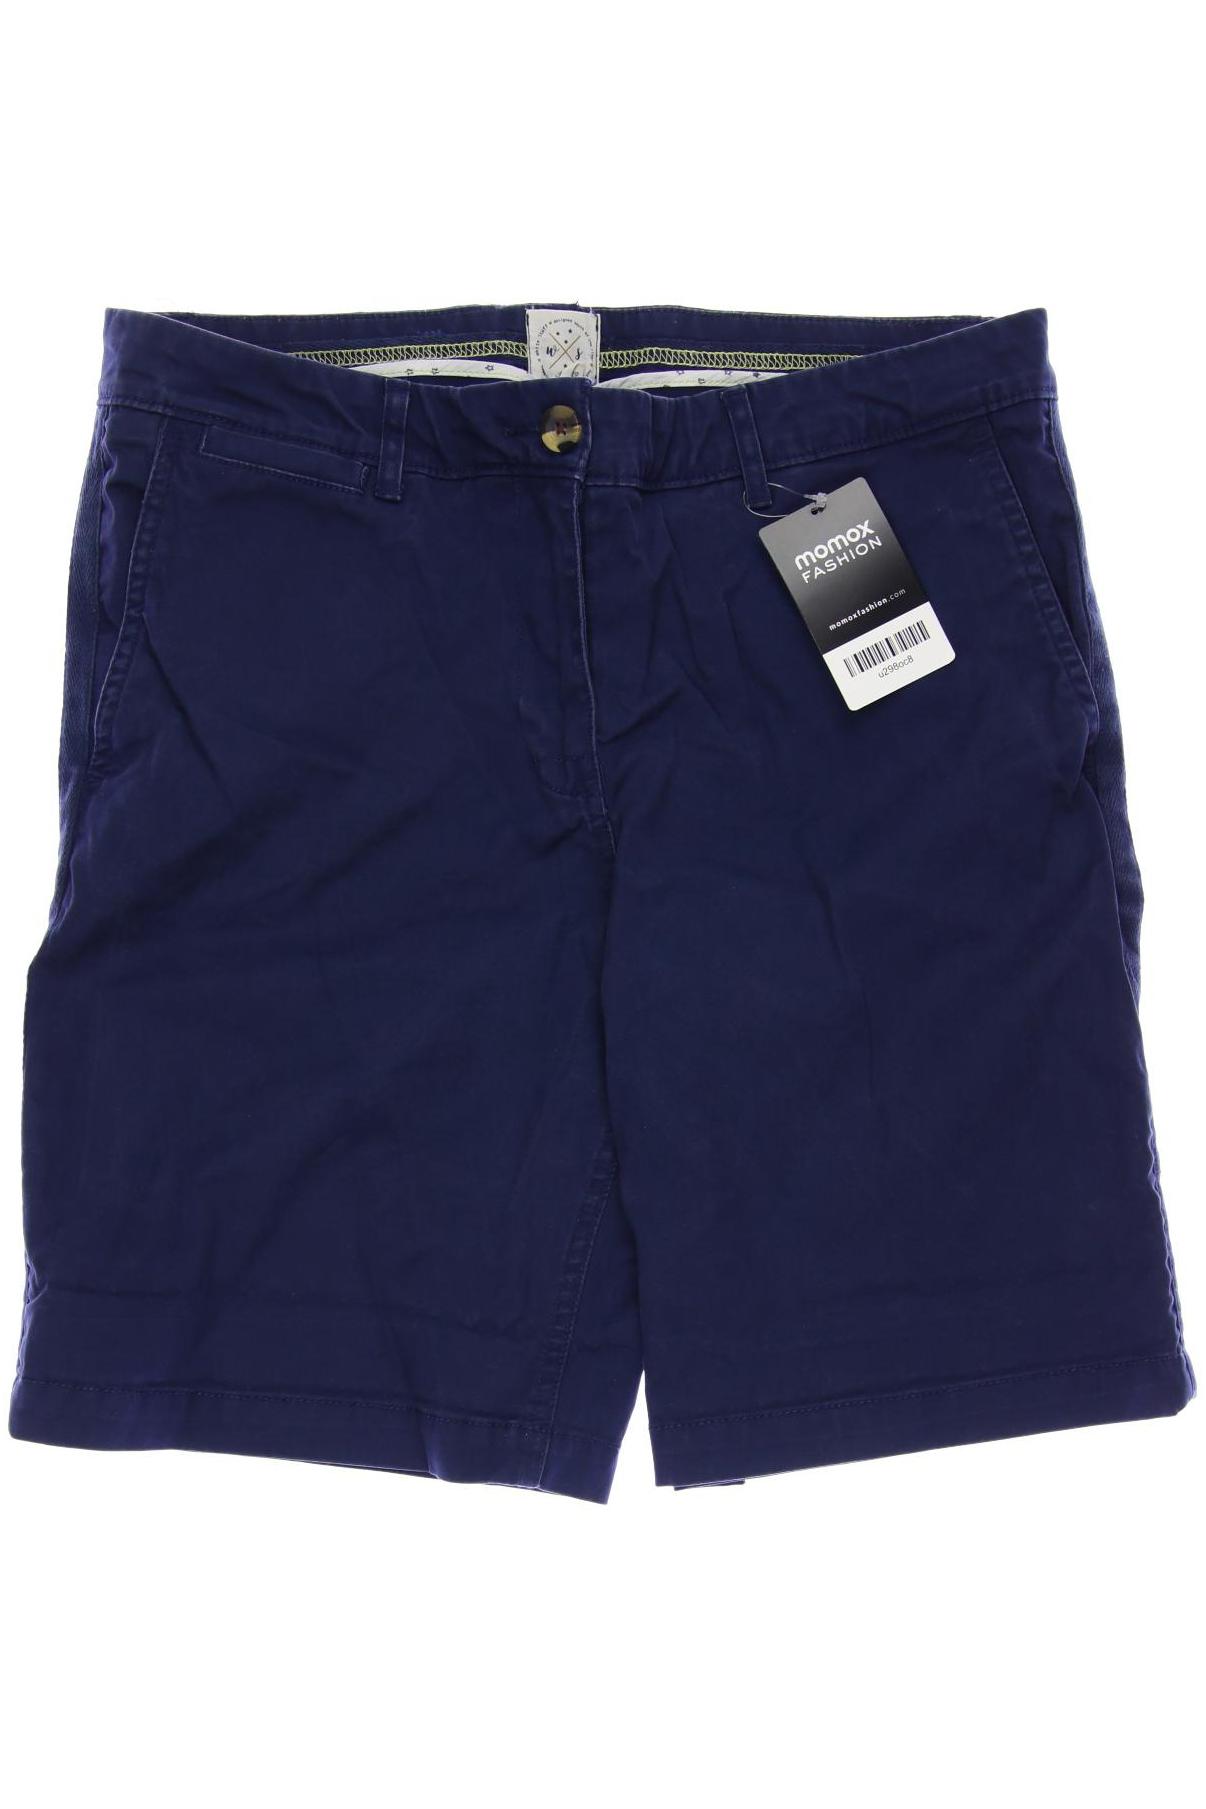 White Stuff Damen Shorts, marineblau, Gr. 38 von White Stuff